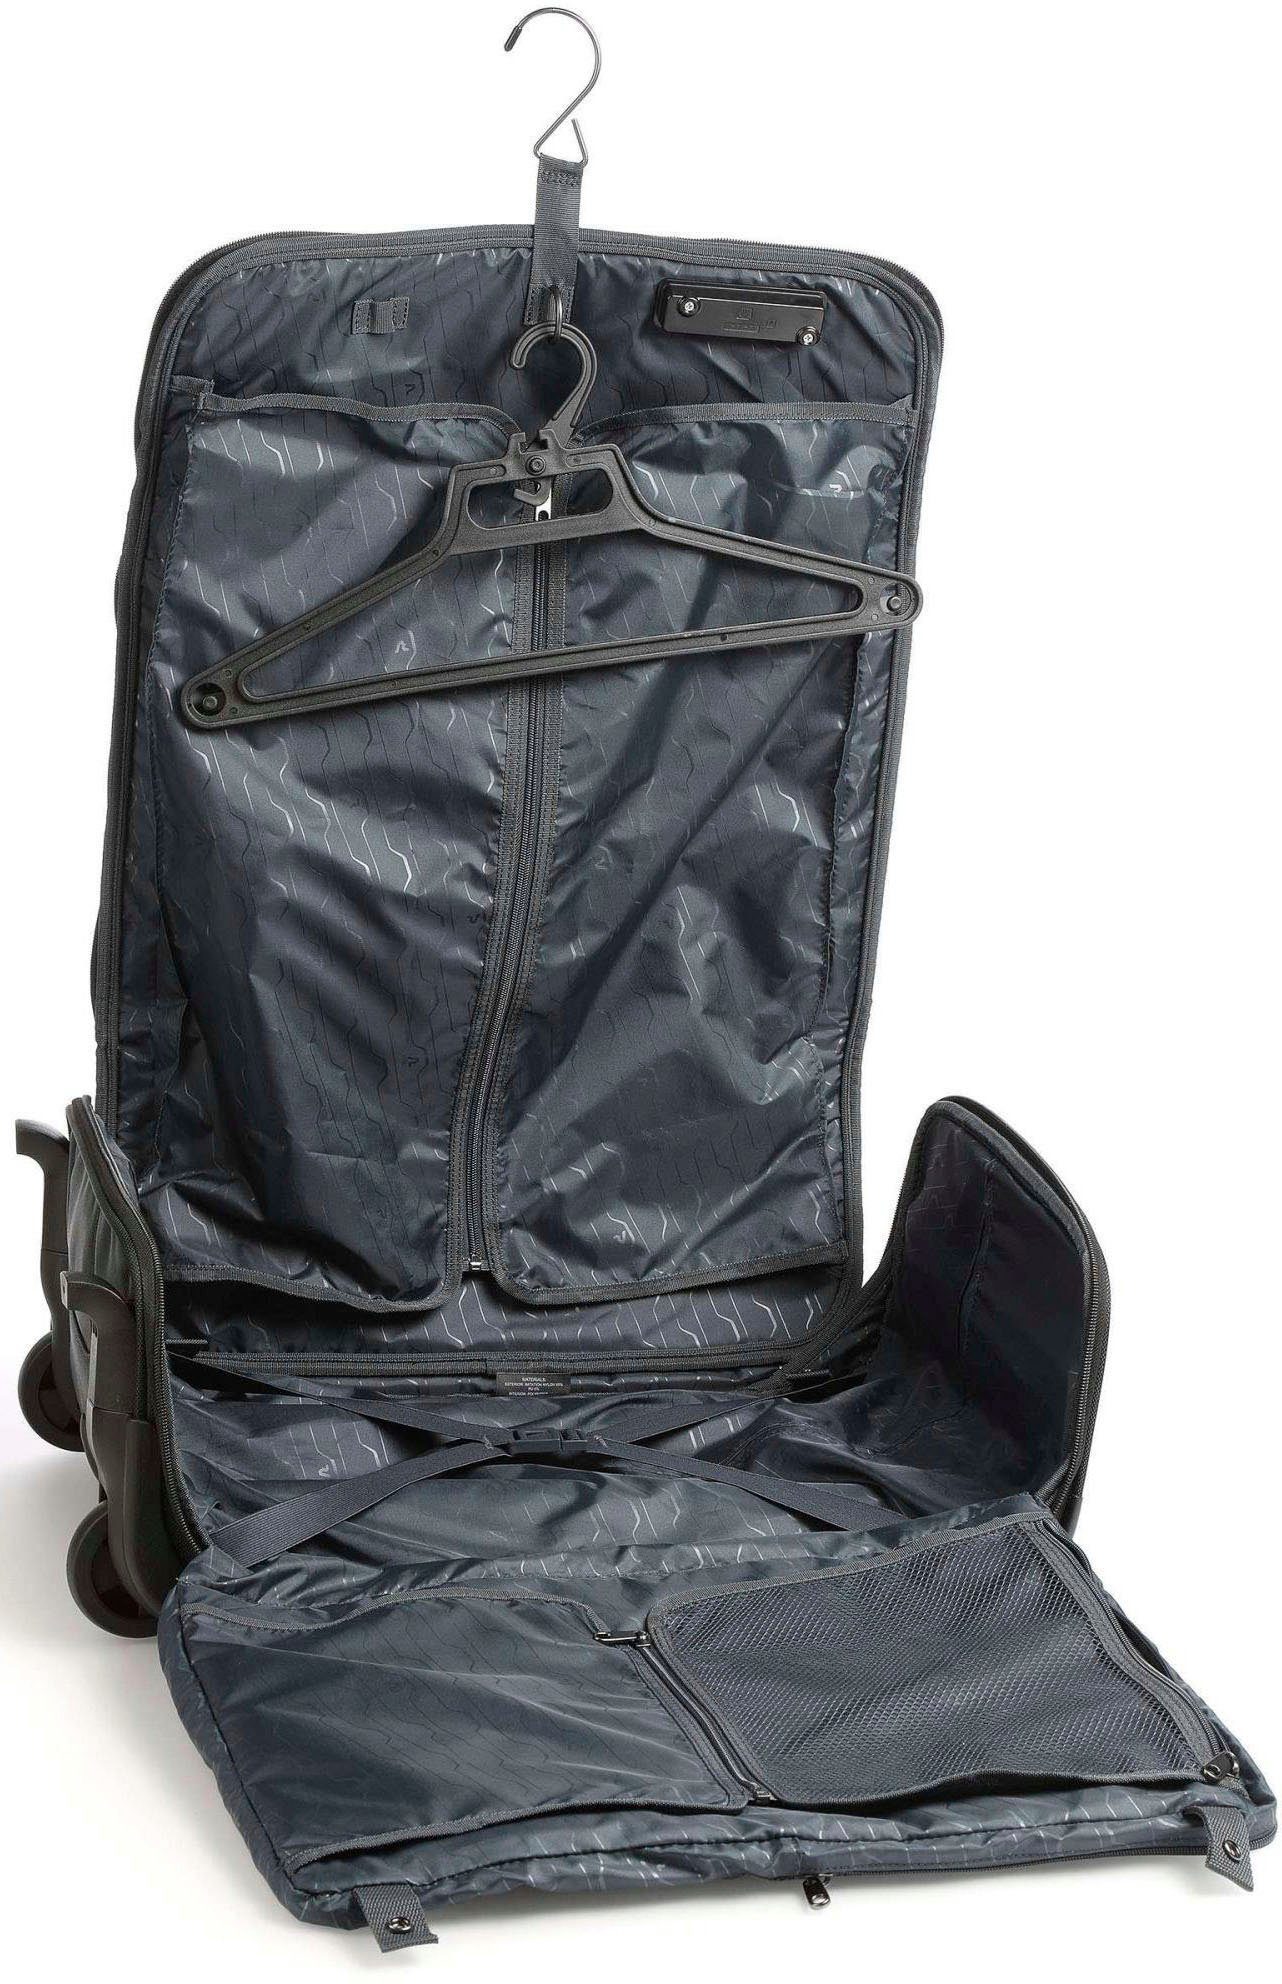 Kabinentrolley-Kleidersack auf Rollen, in der 4.0 Kleiderbügel schwarz BIZ mit Kabine Kleidersack RONCATO